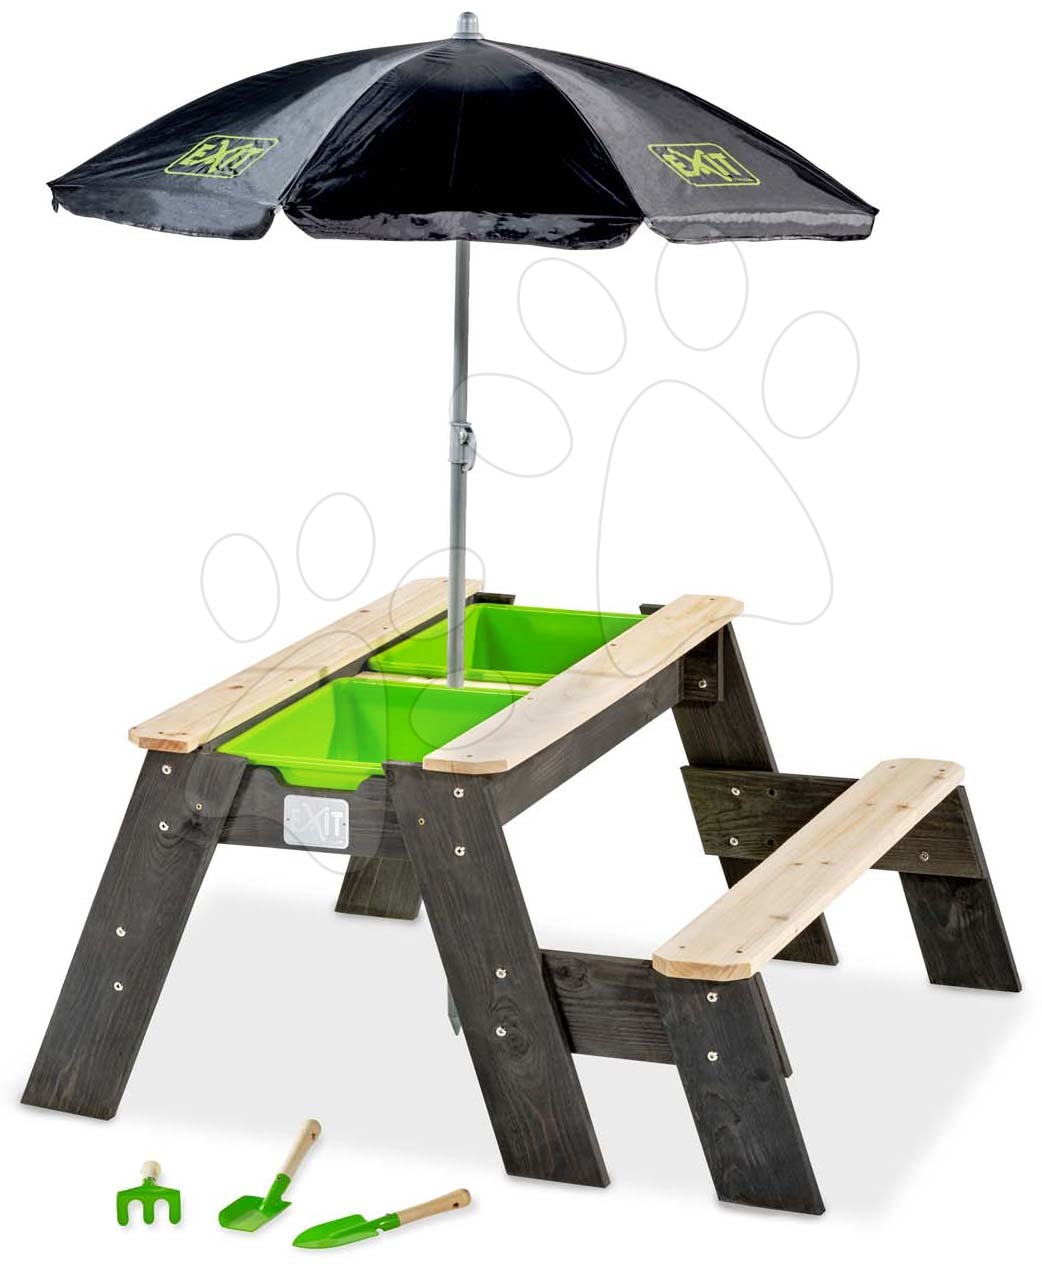 Homokozó asztal homokra és vízre cédrusból Aksent sand&water table Exit Toys piknik paddal napernyővel fedéllel és kiegészitőkkel